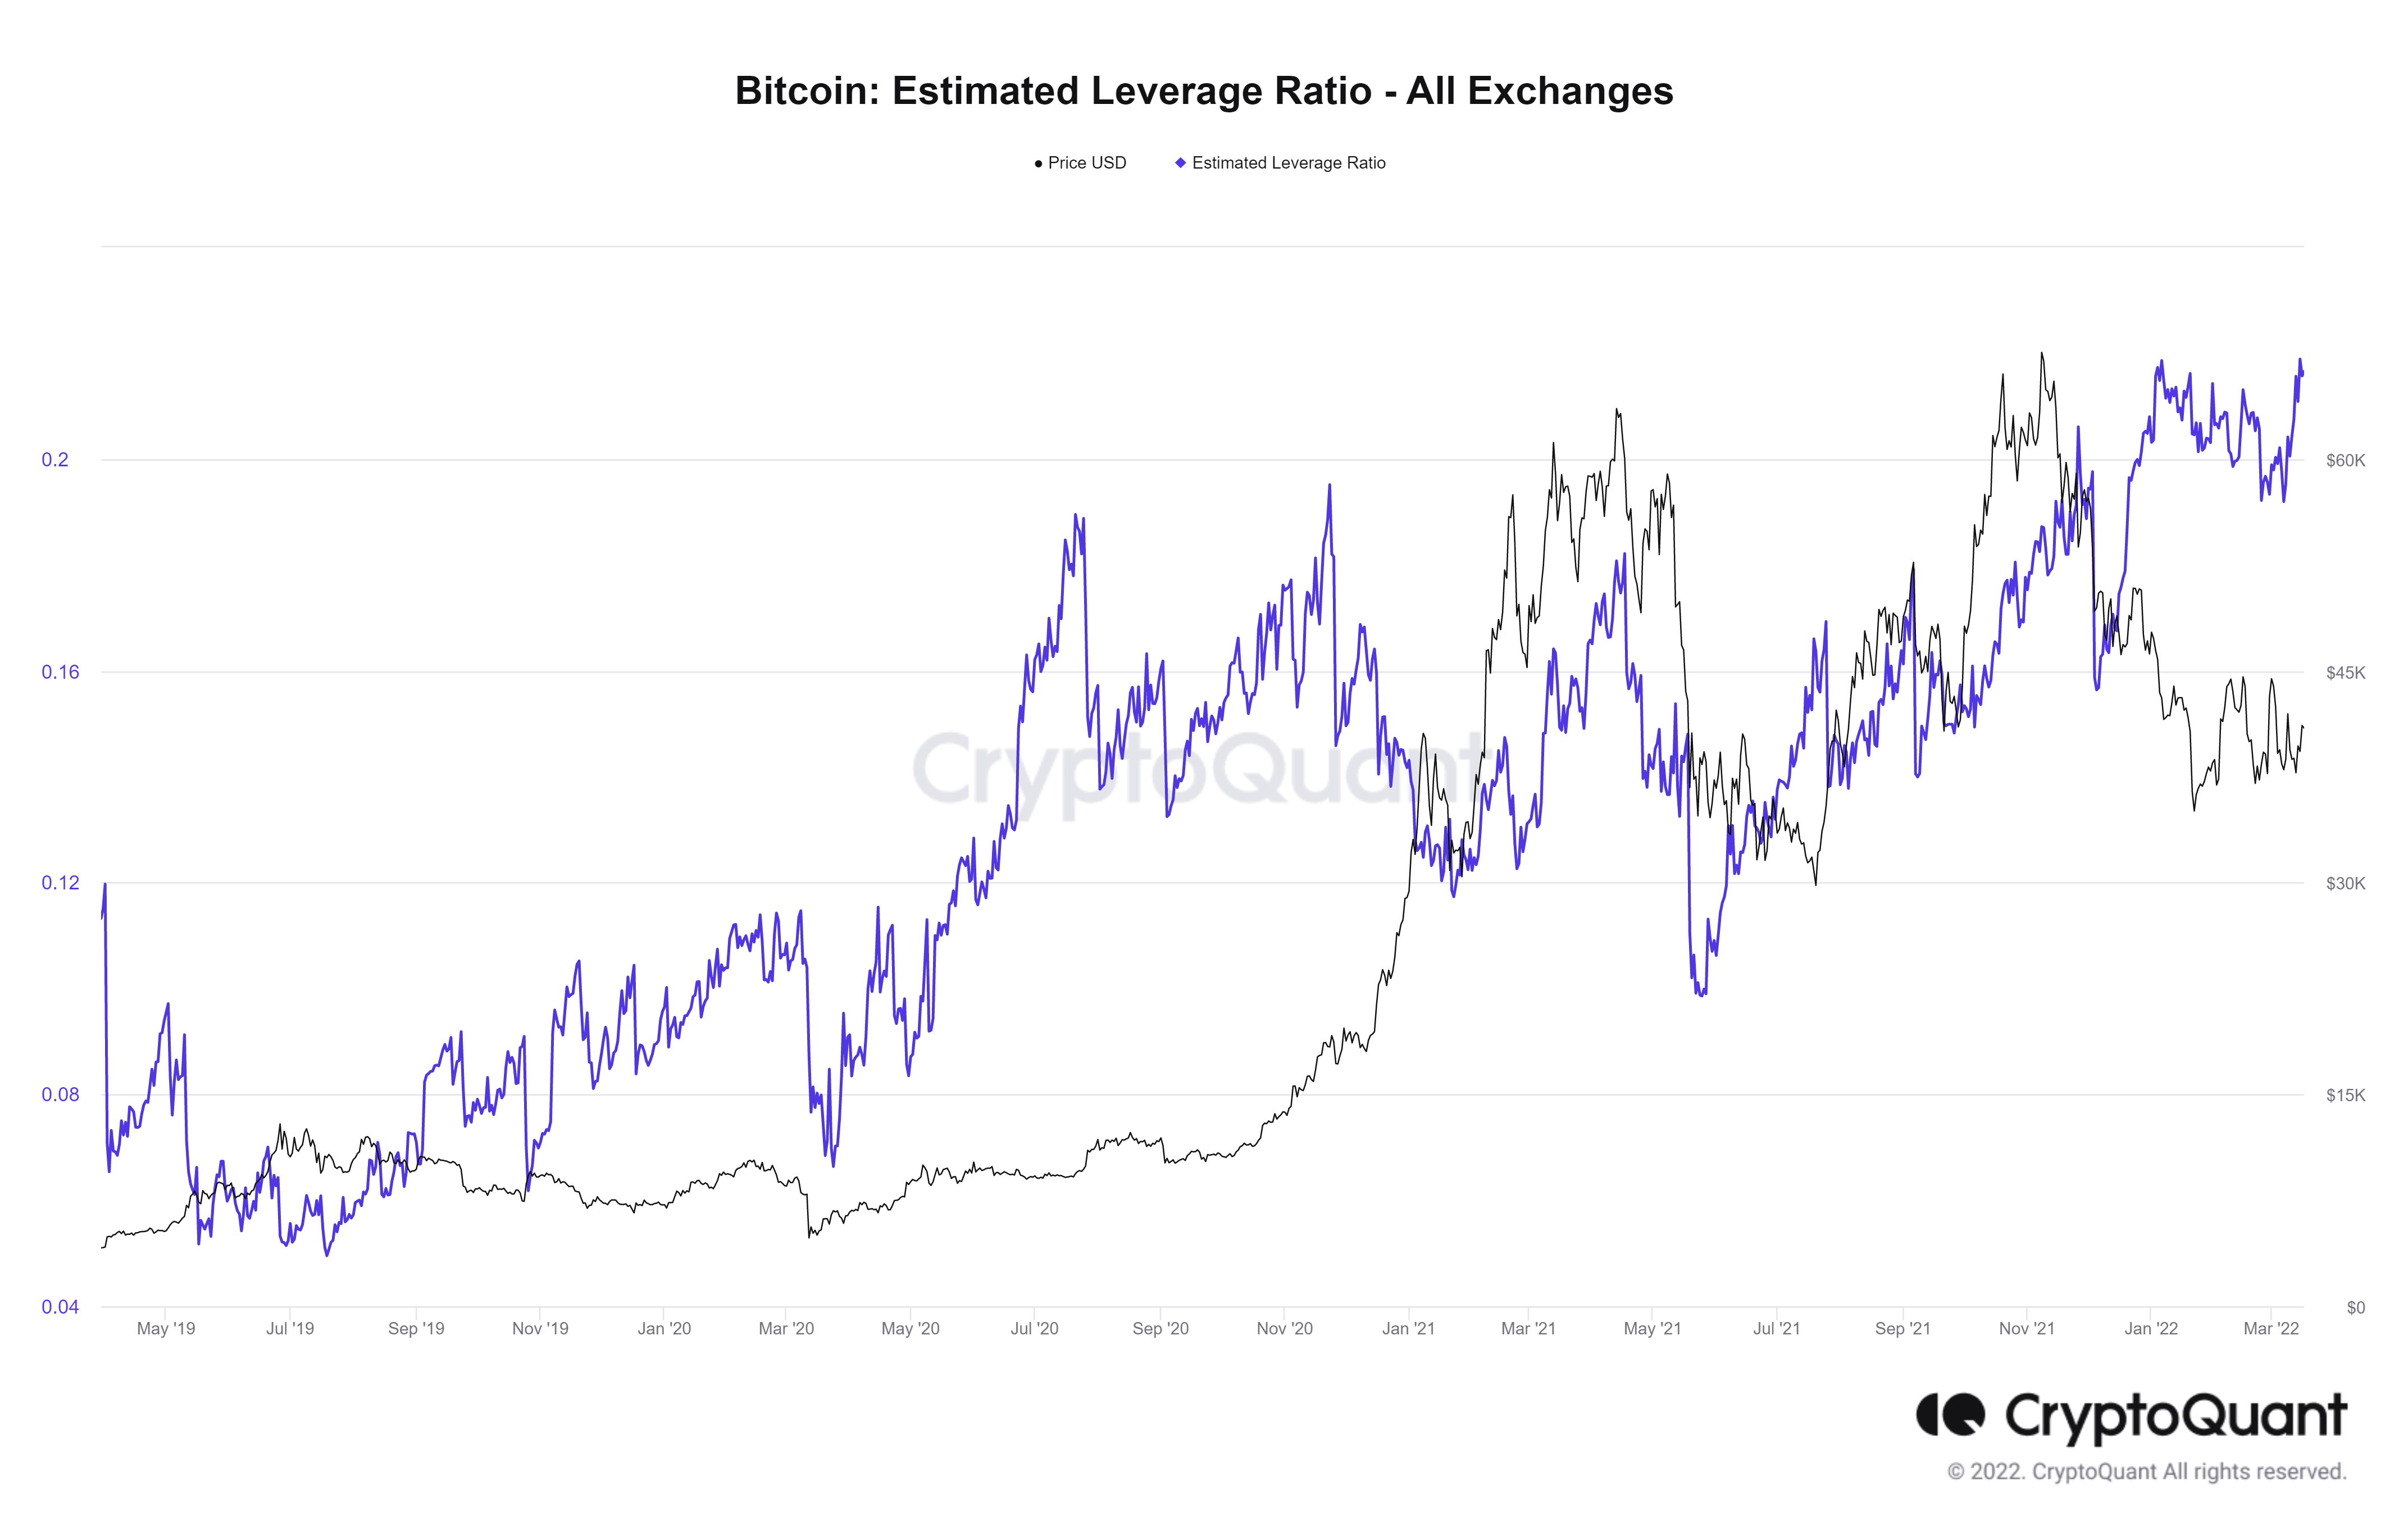 BTC estimated leverage ratio